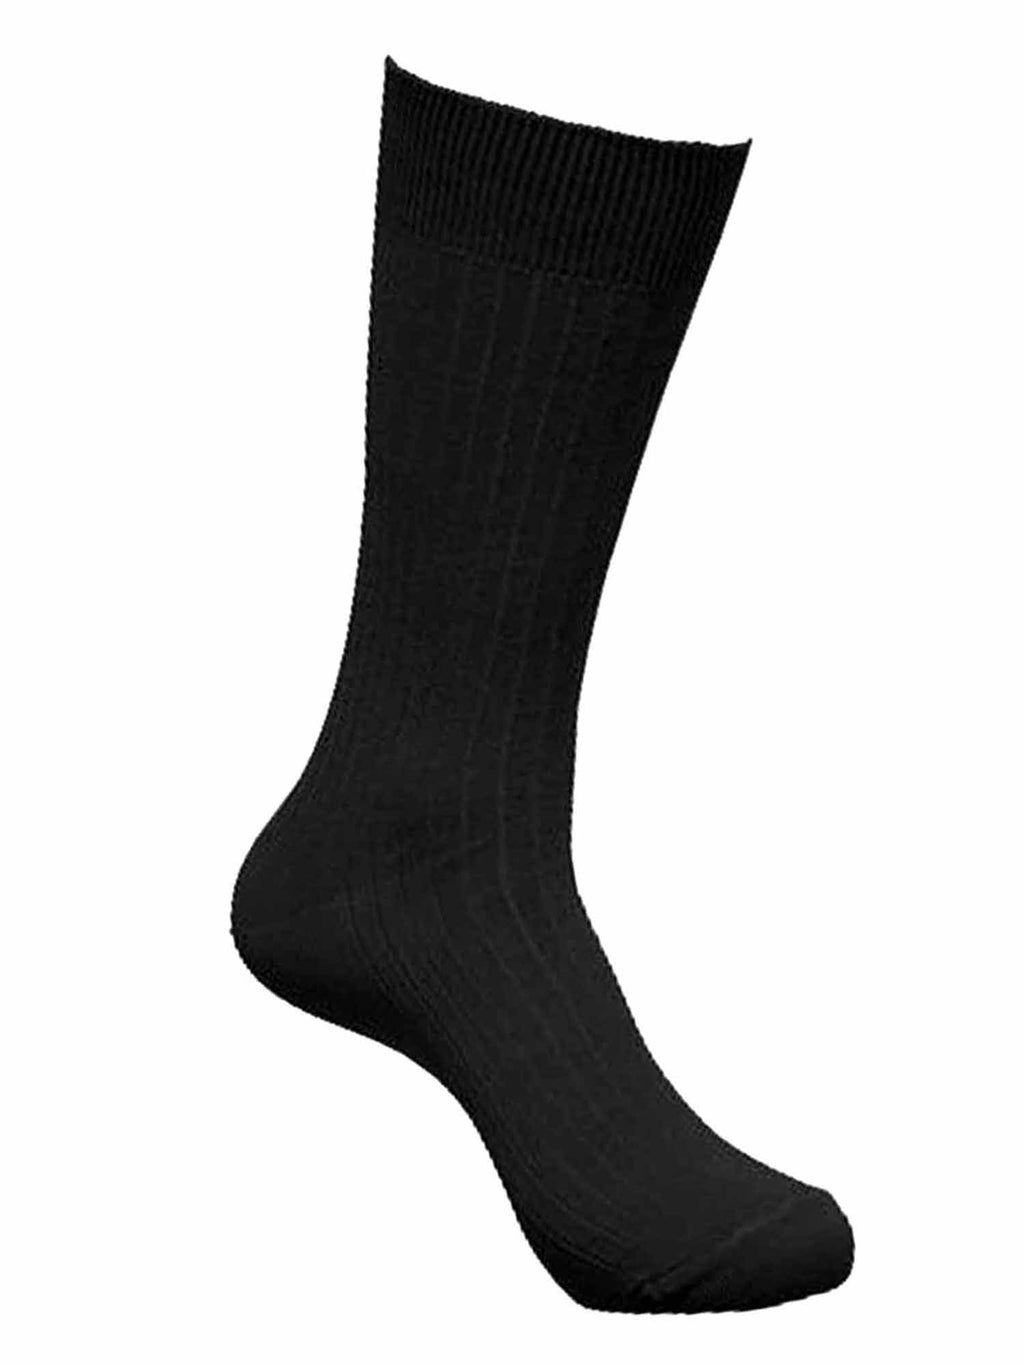 Mens All Black Crew Length Dress Socks 6 Pack